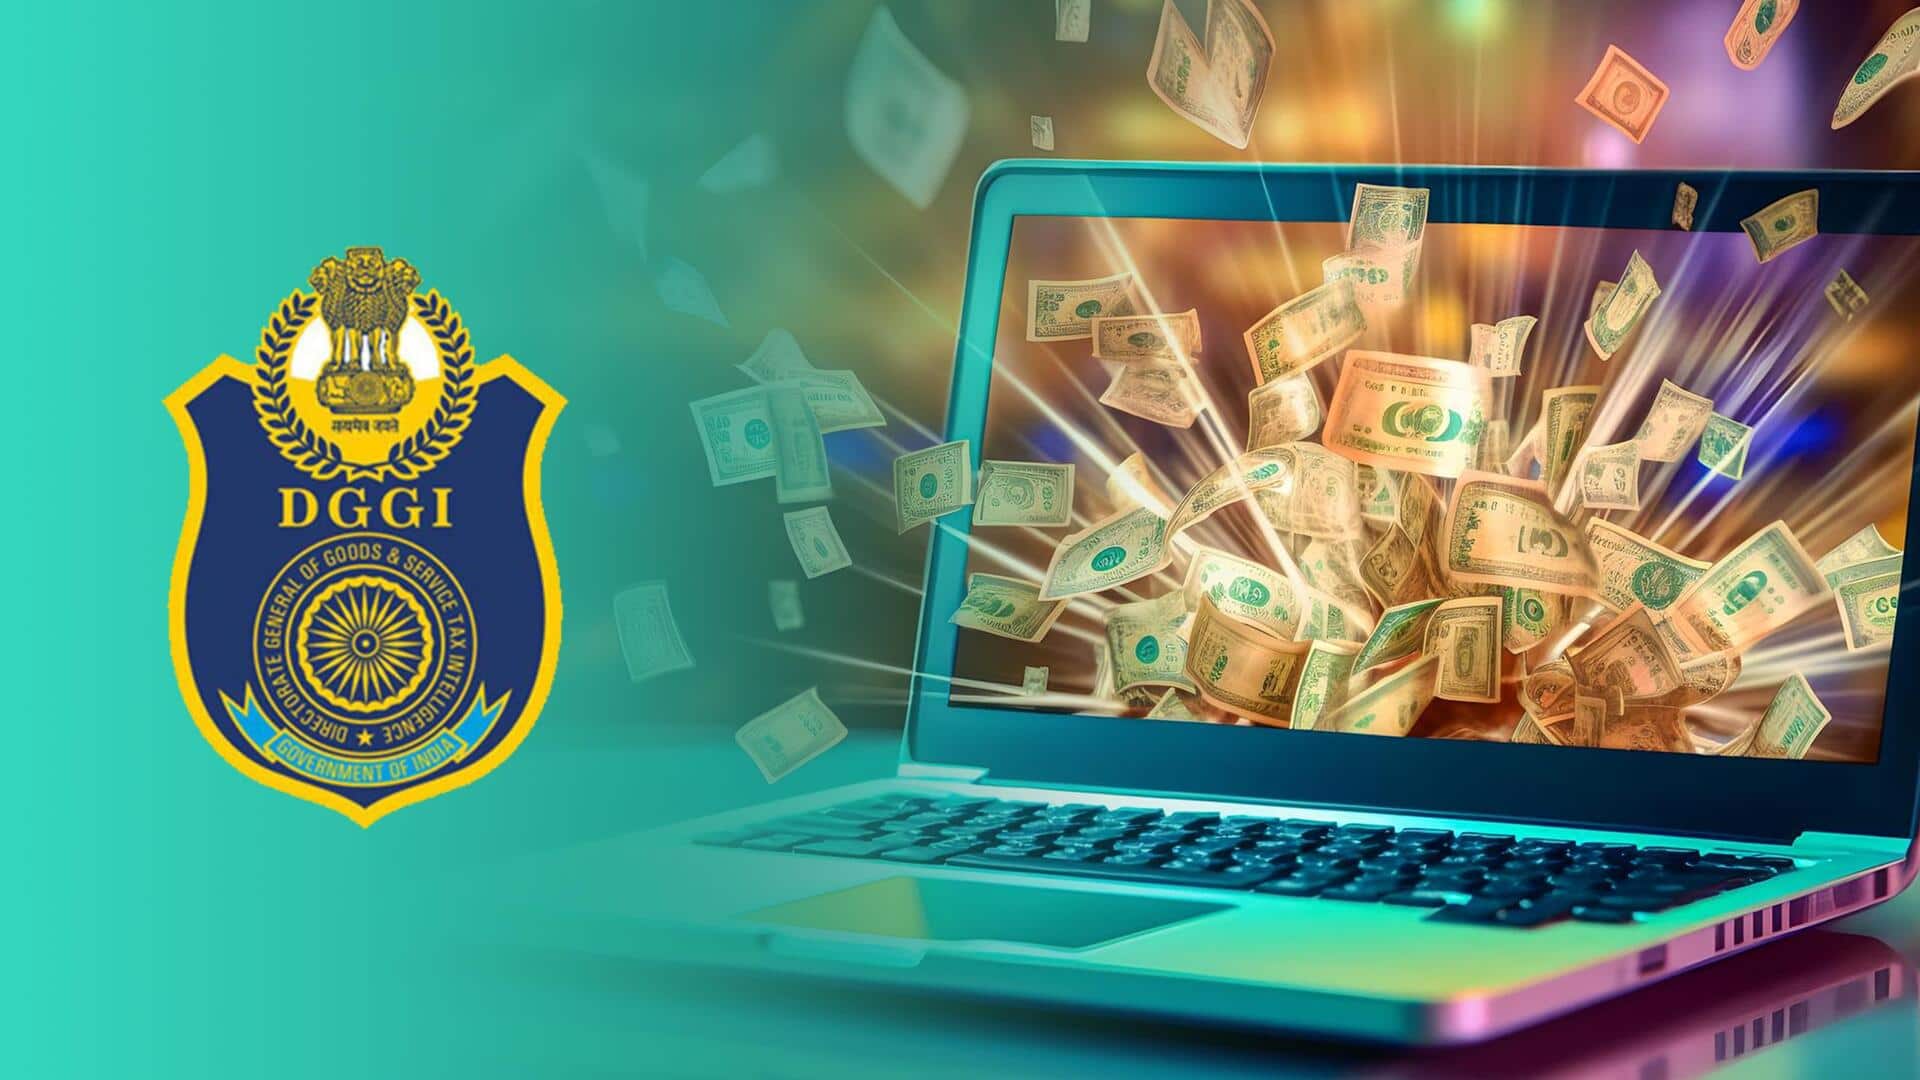 ई-गेमिंग कंपनियों को 1 लाख करोड़ रुपये तक के नोटिस भेज सकती है सरकार